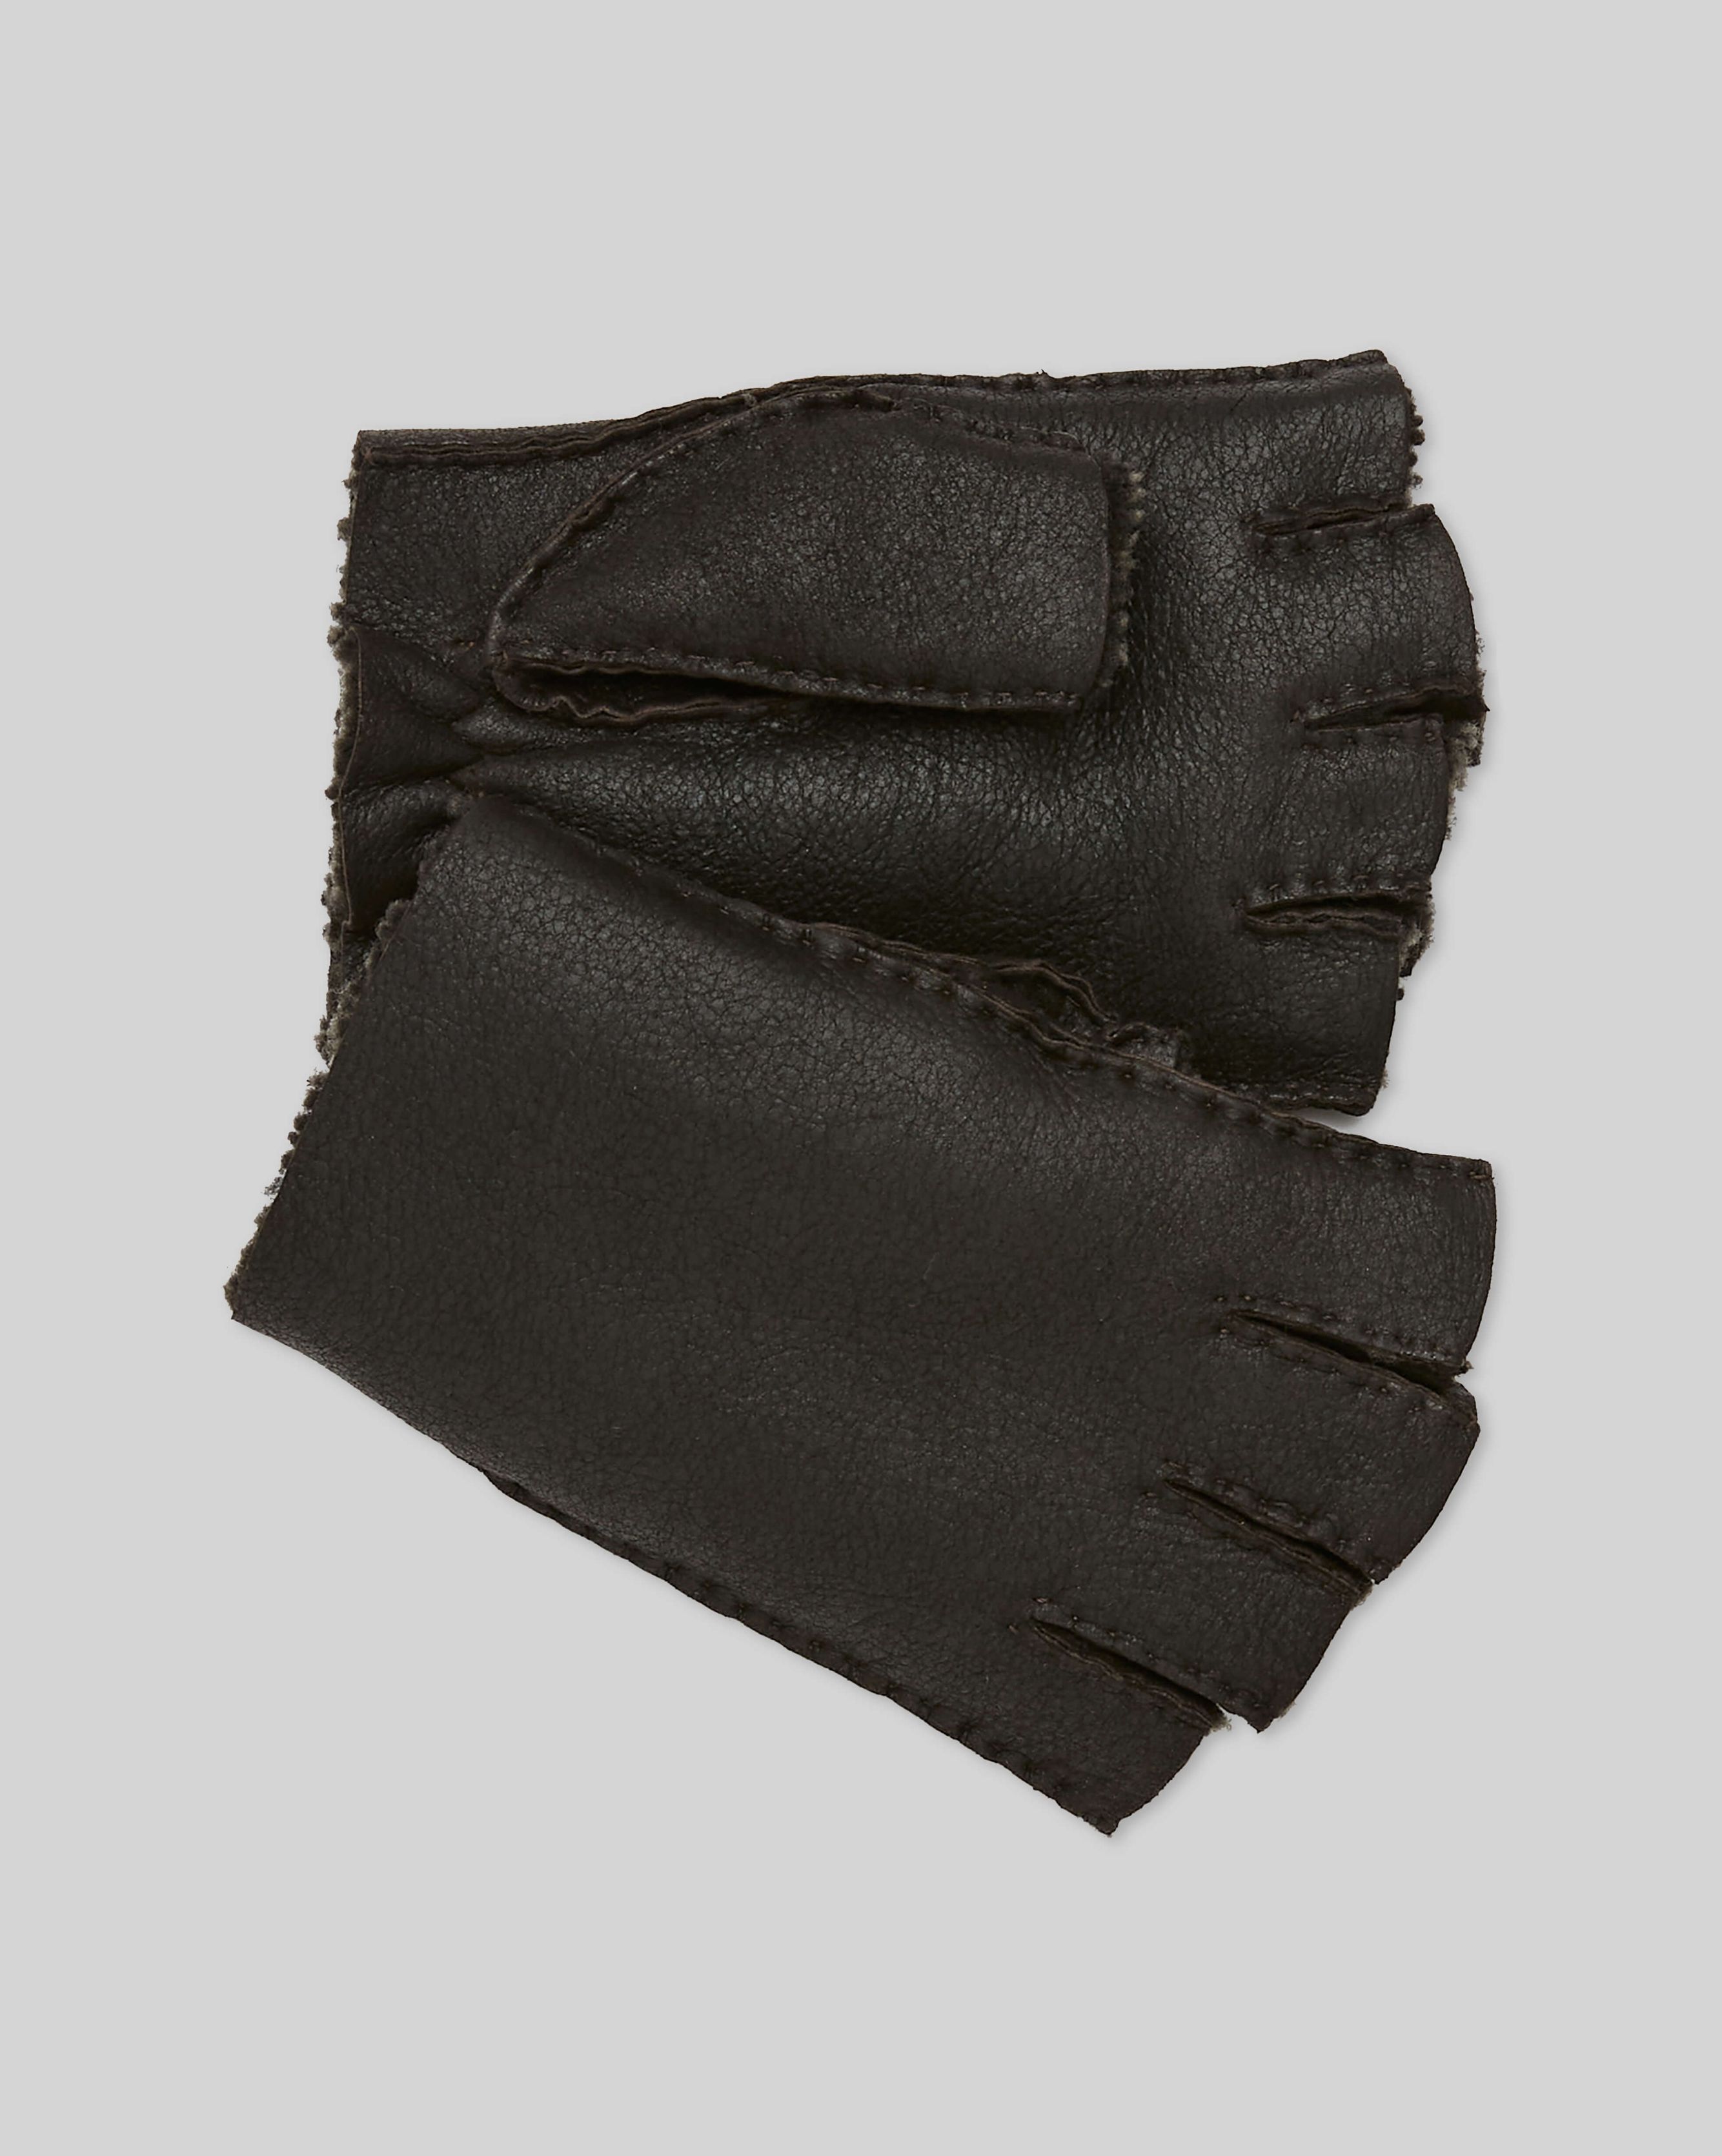 Fingerless Super Star Leather Gloves